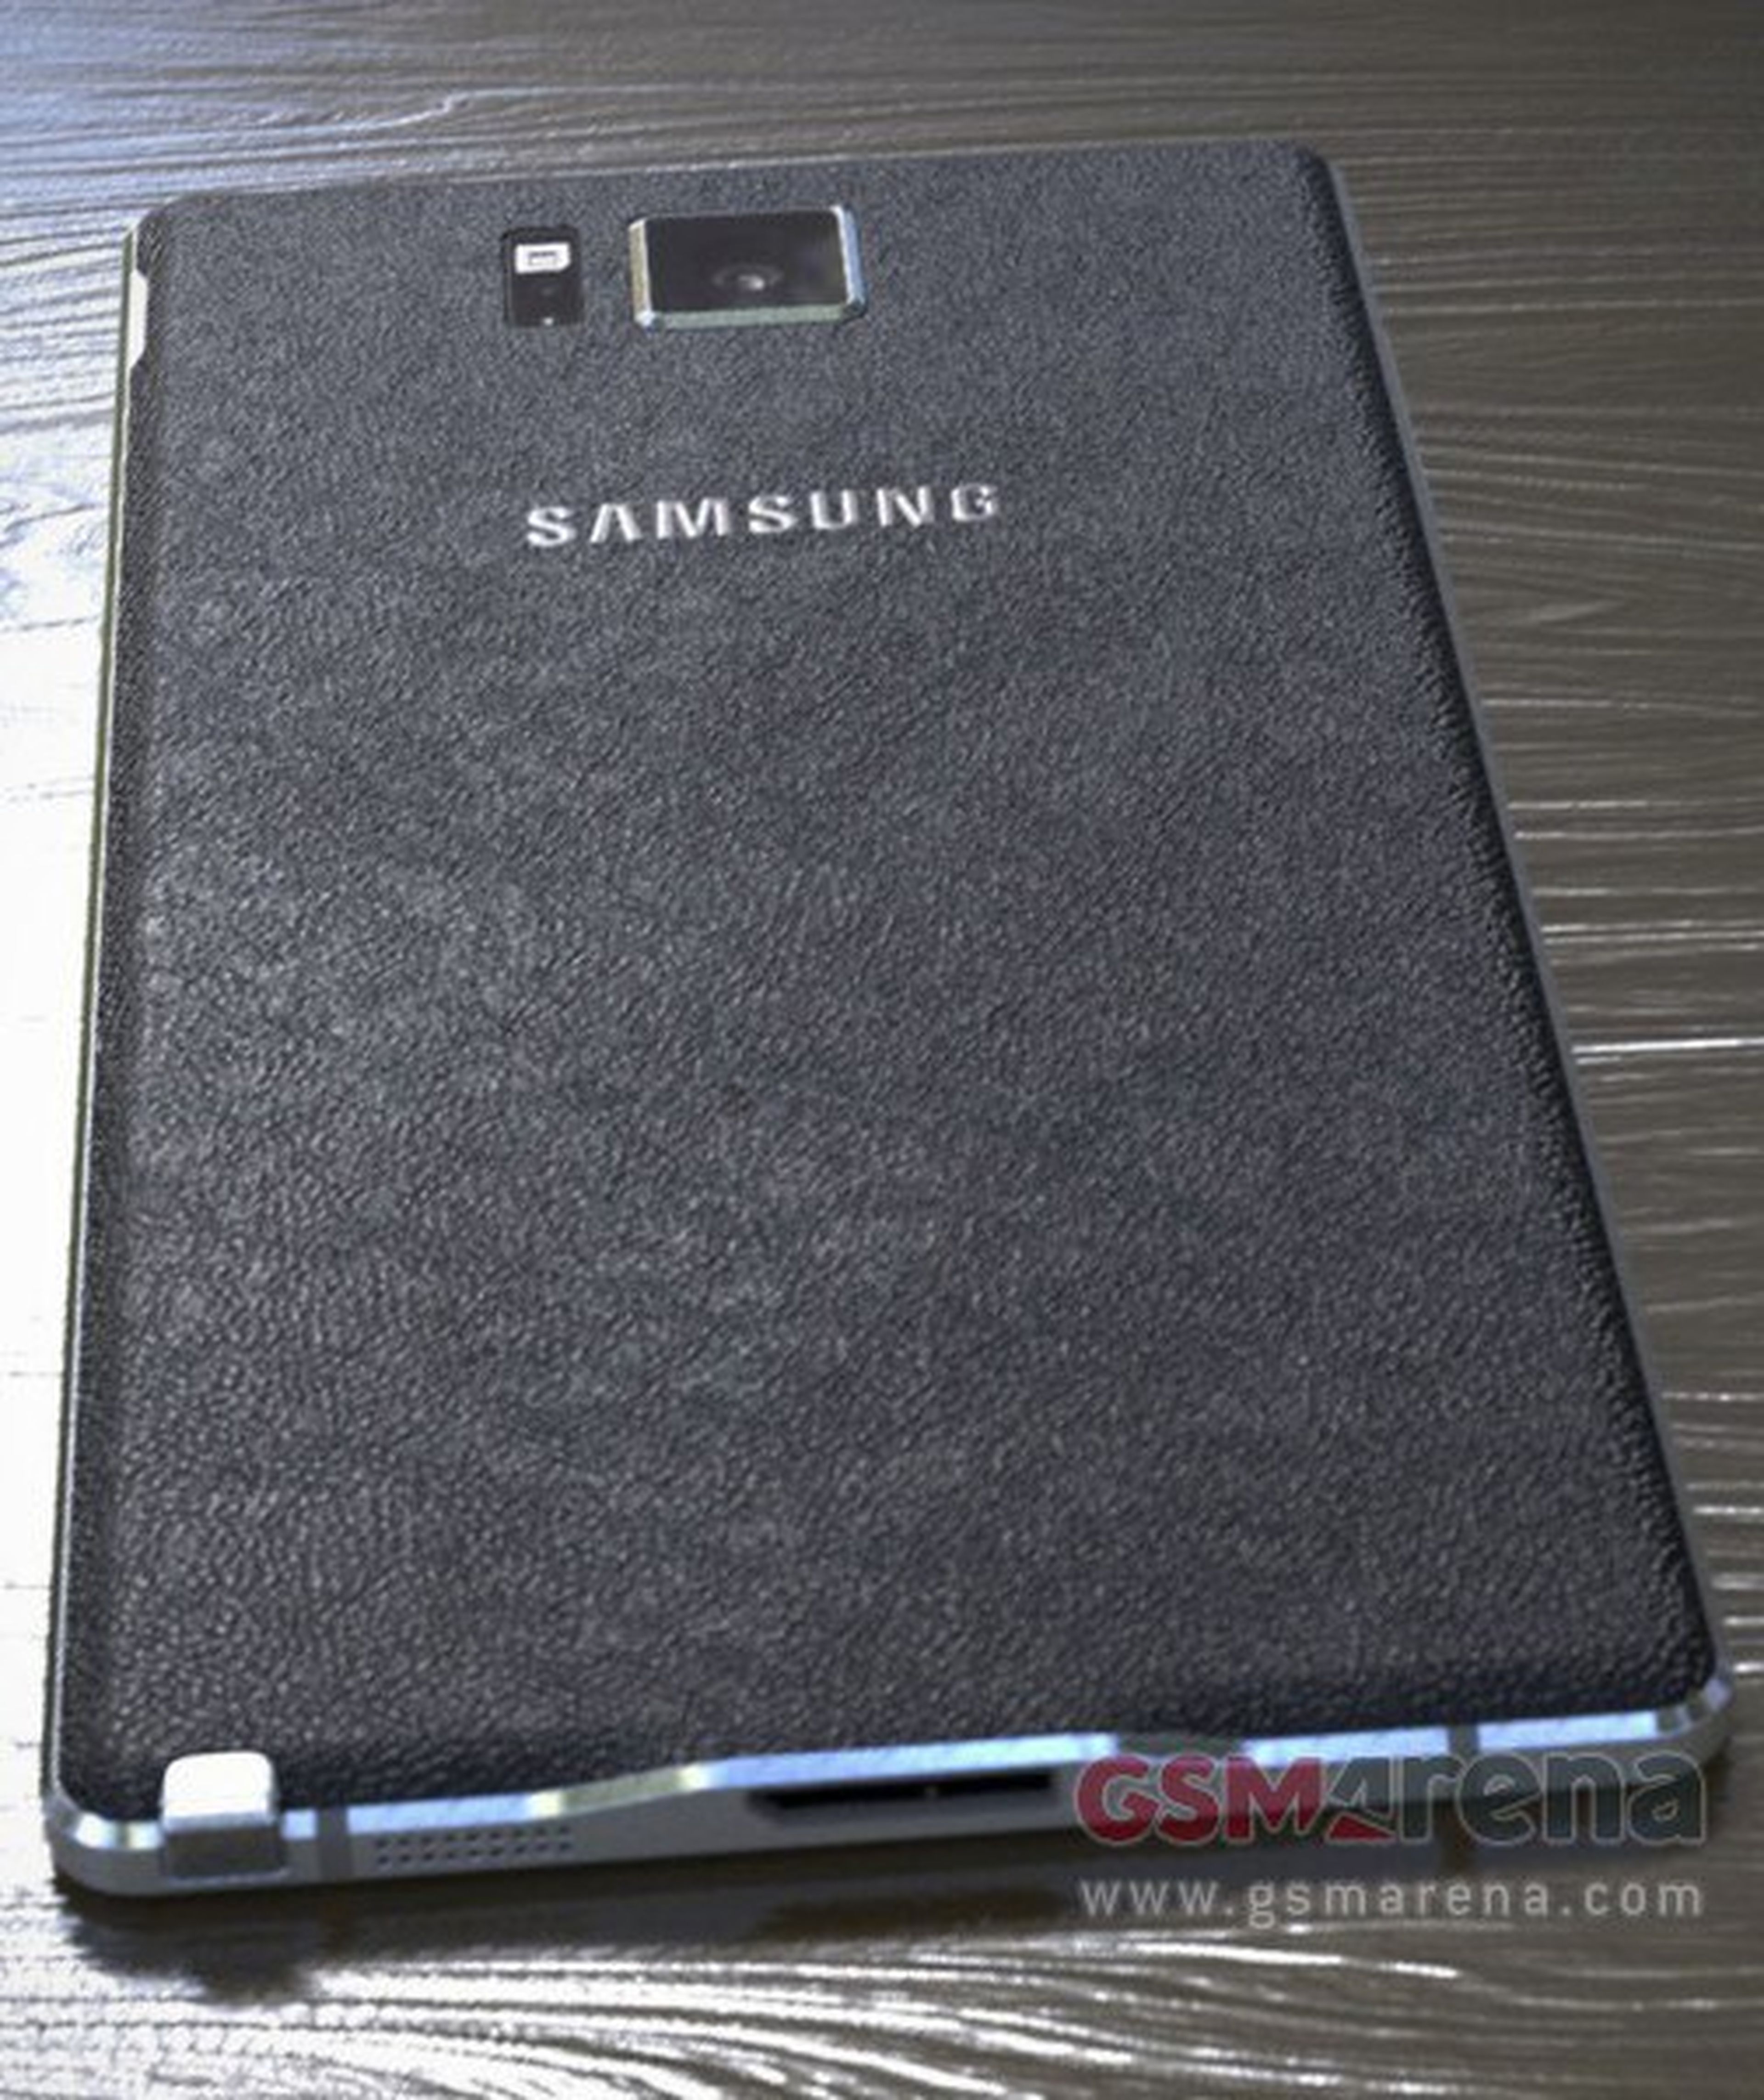 Samsung Galaxy Note 4, filtradas las primeras imágenes